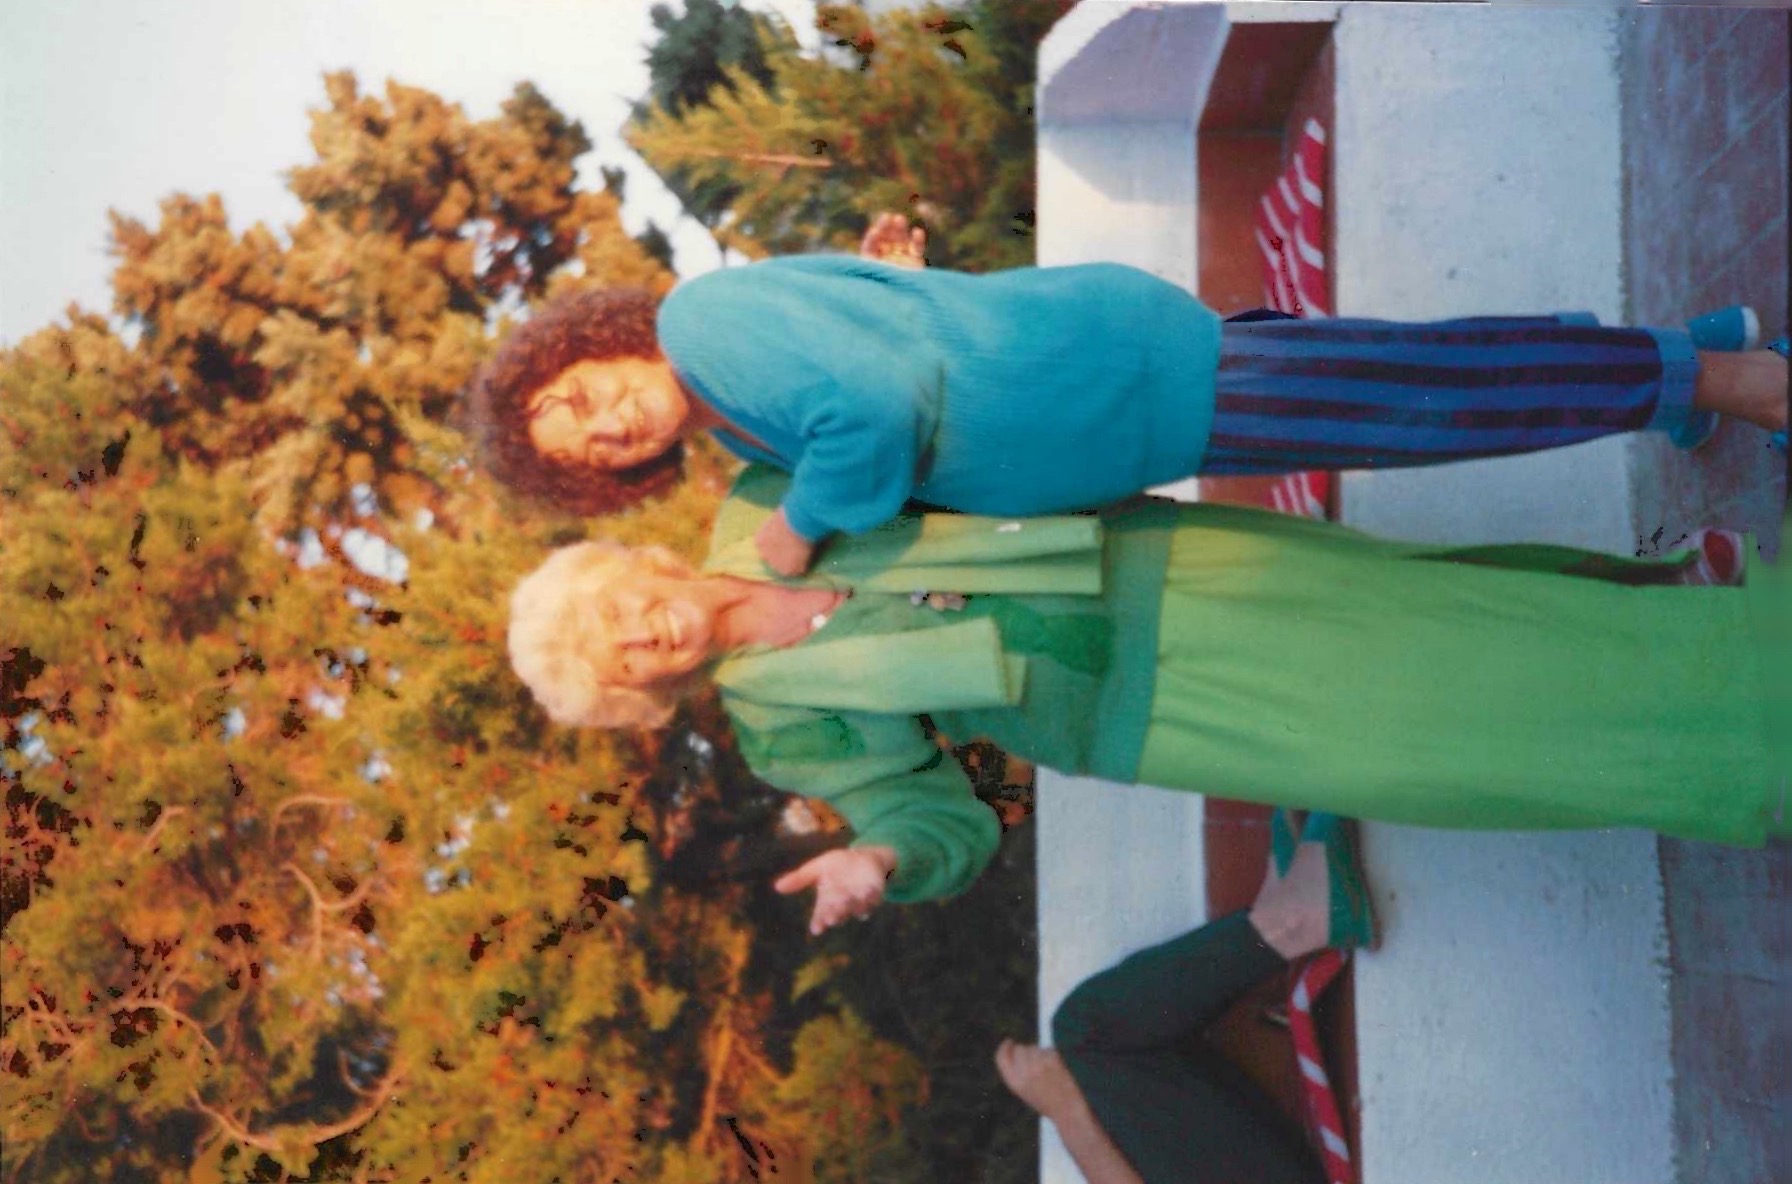 Una fotografia di Elsa de’ Giorgi e Maria Grazia Rombaldi (agosto 1990, San Felice Circeo). Per gentile concessione di Roberto Deidier